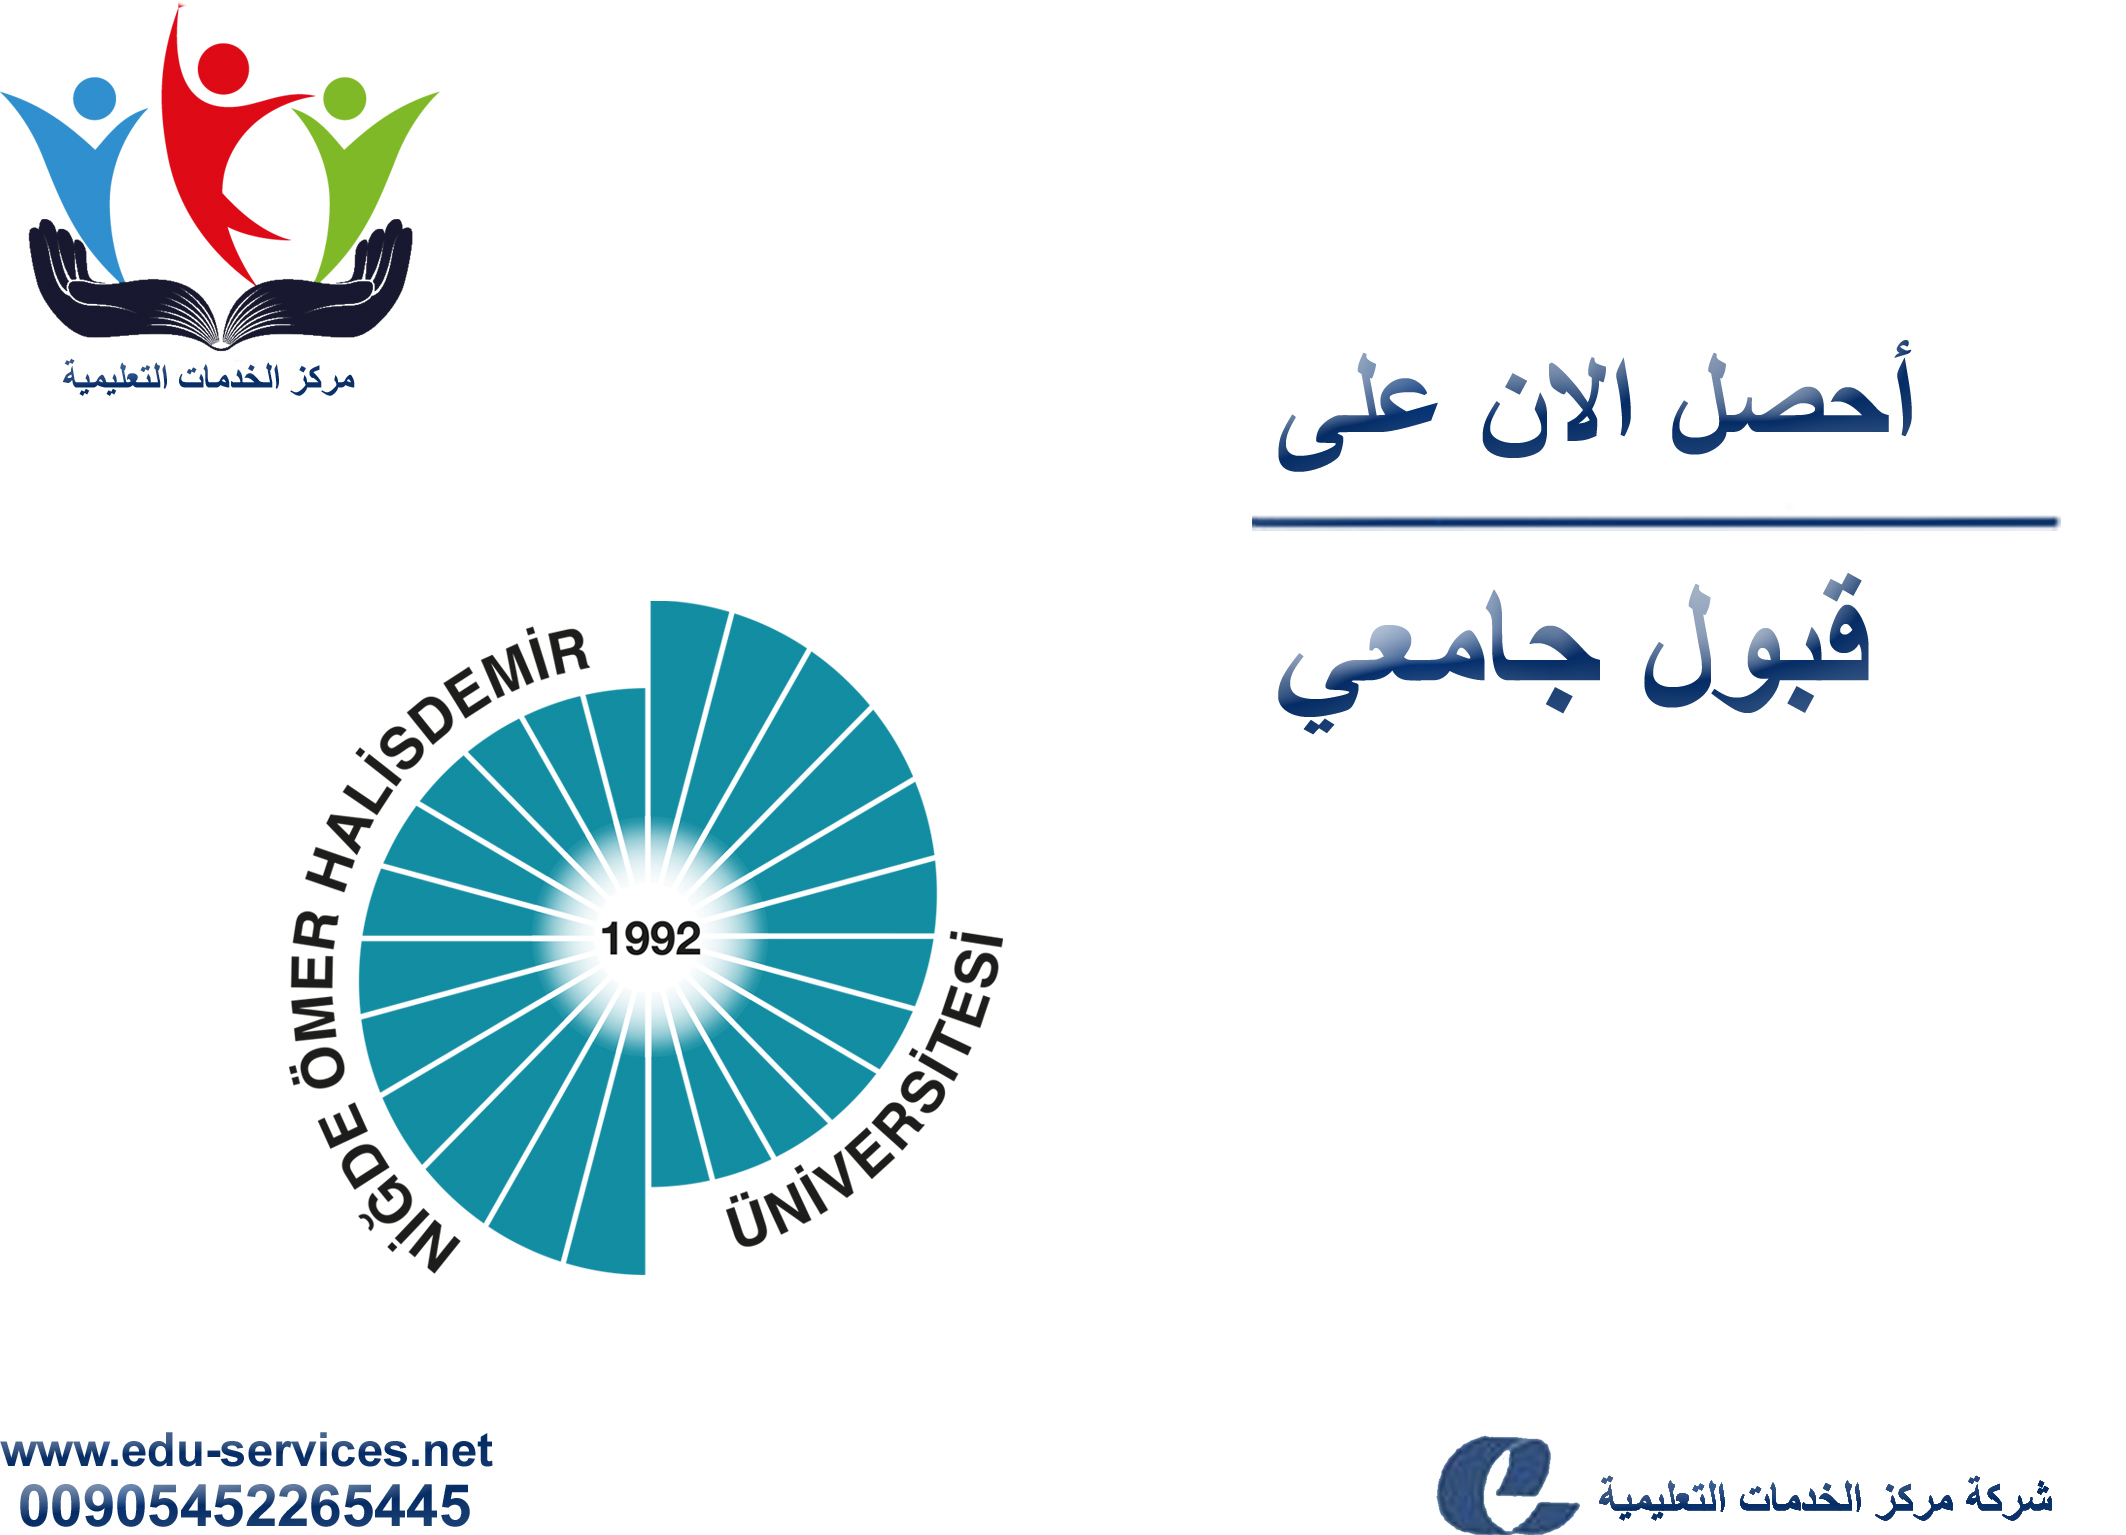 افتتاح التسجيل في جامعة عمر خالص دمير للعام 2019-2020